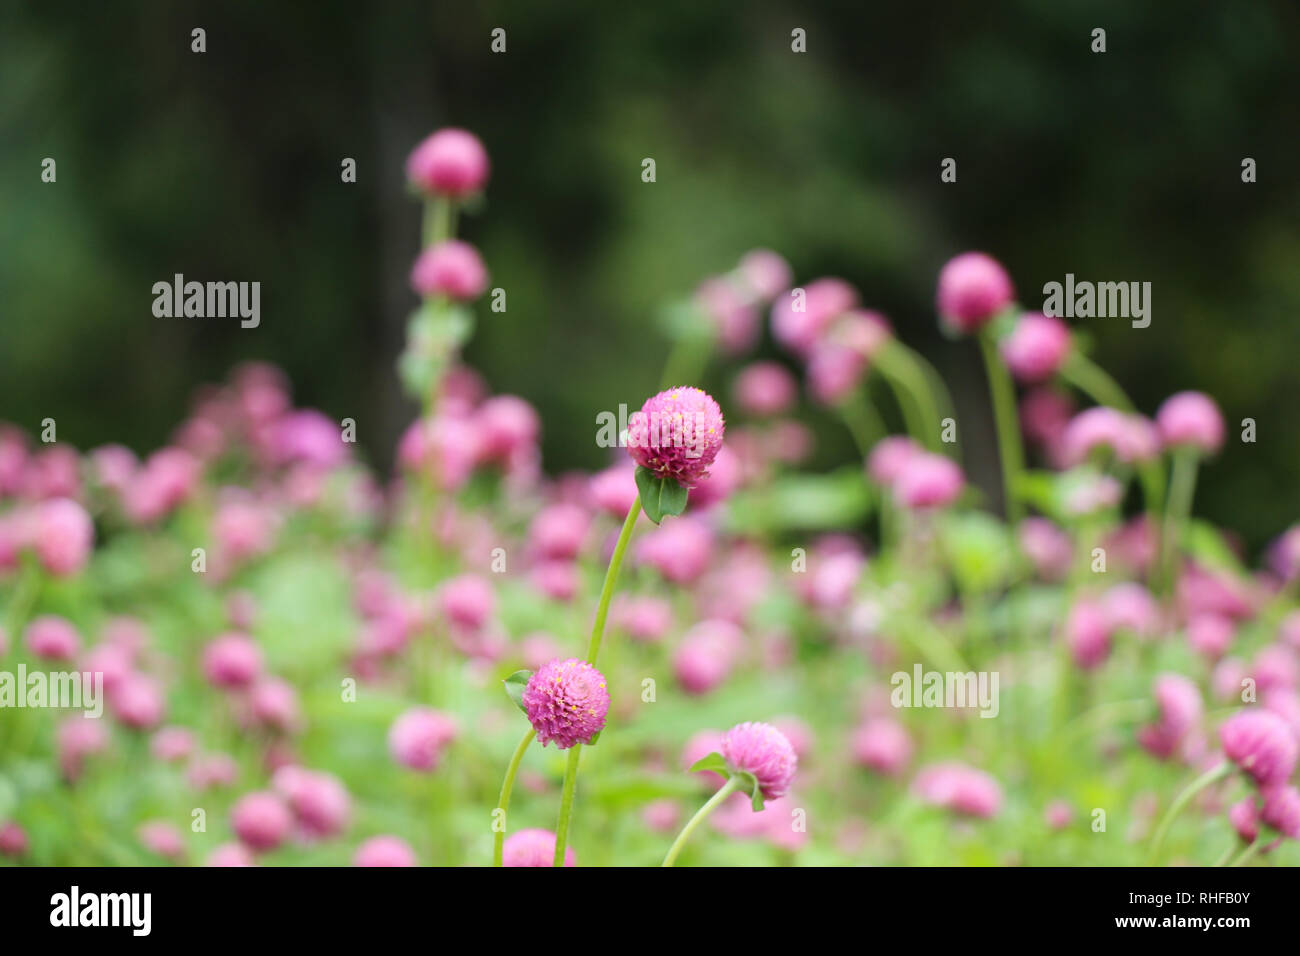 Beautifu lGlobe amaranths,  Amaranthaceae flowers in nature background Stock Photo